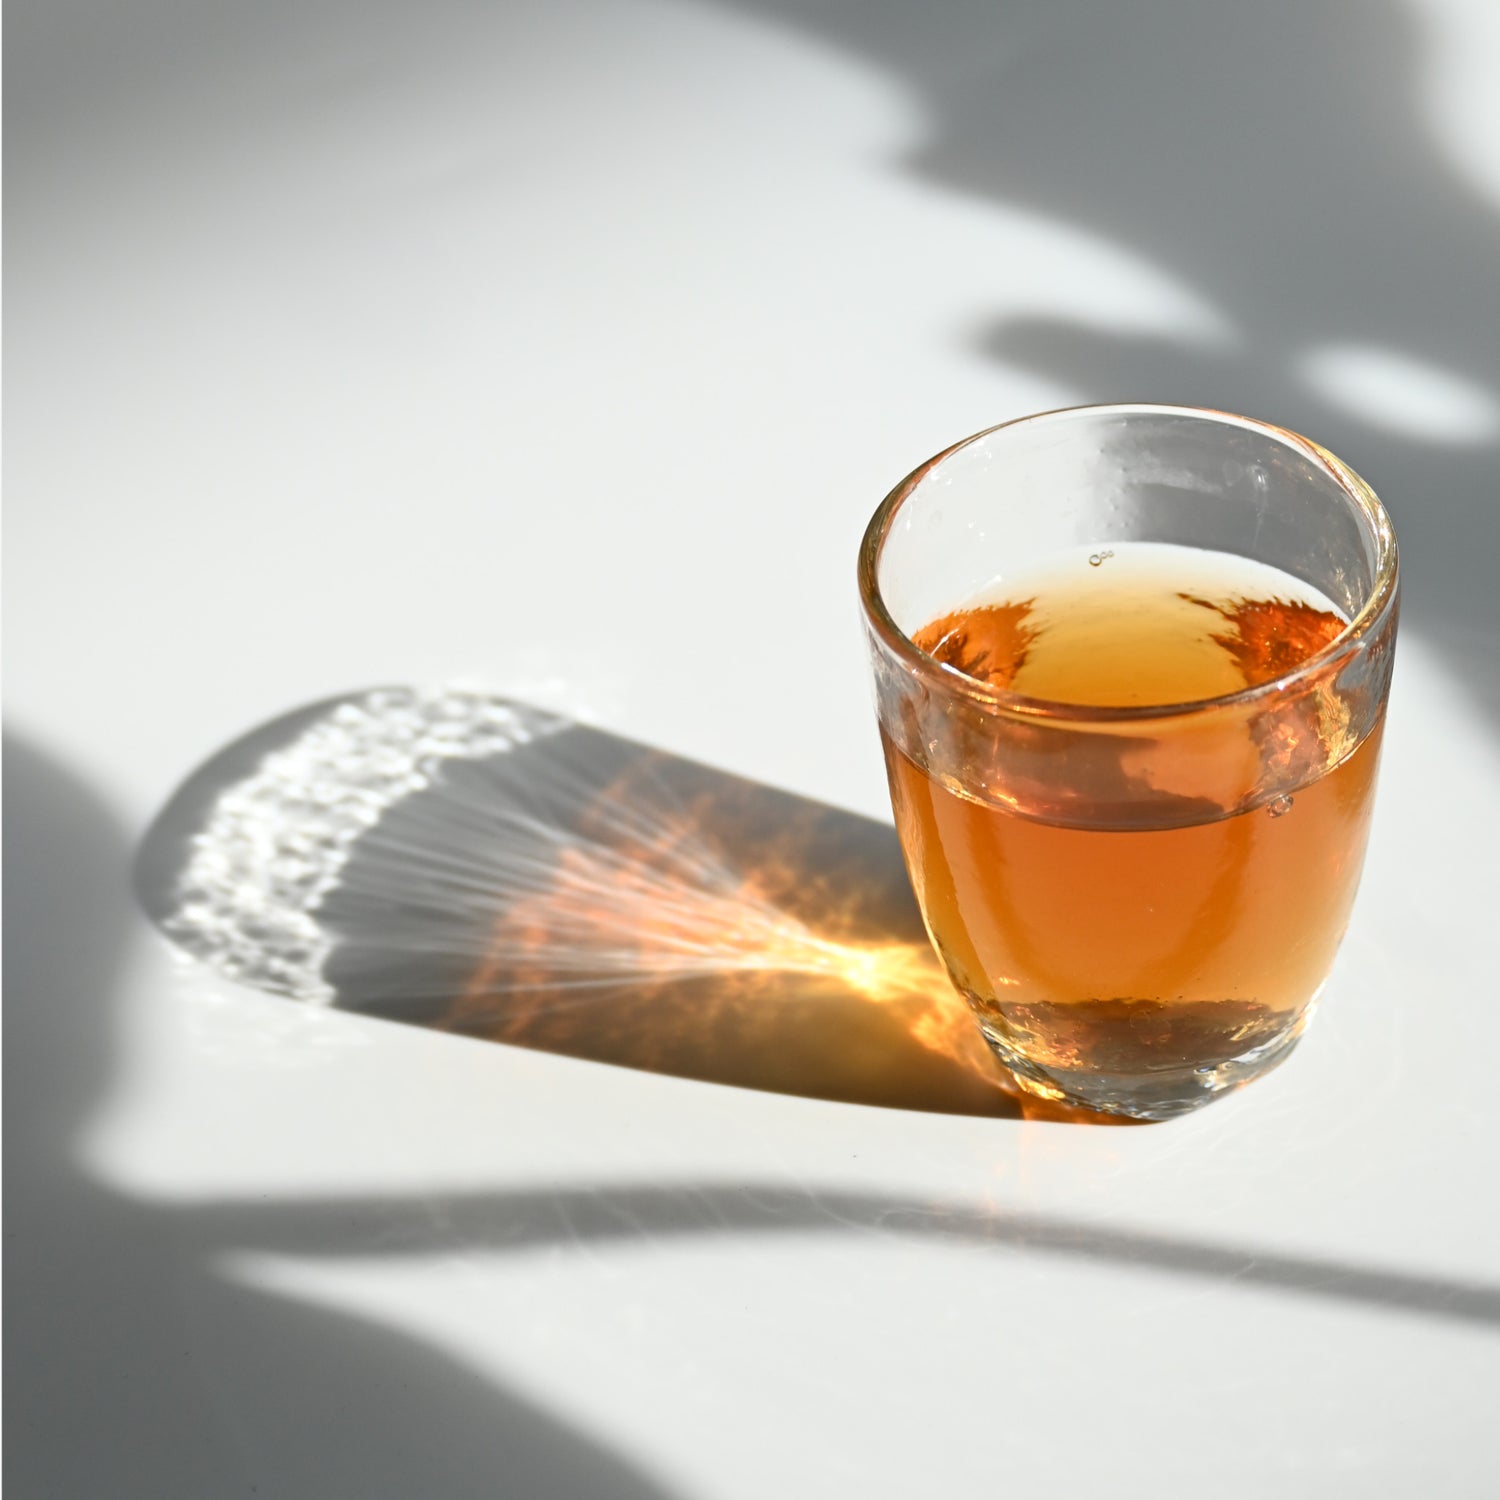 Oolong tea soup under the sunlight